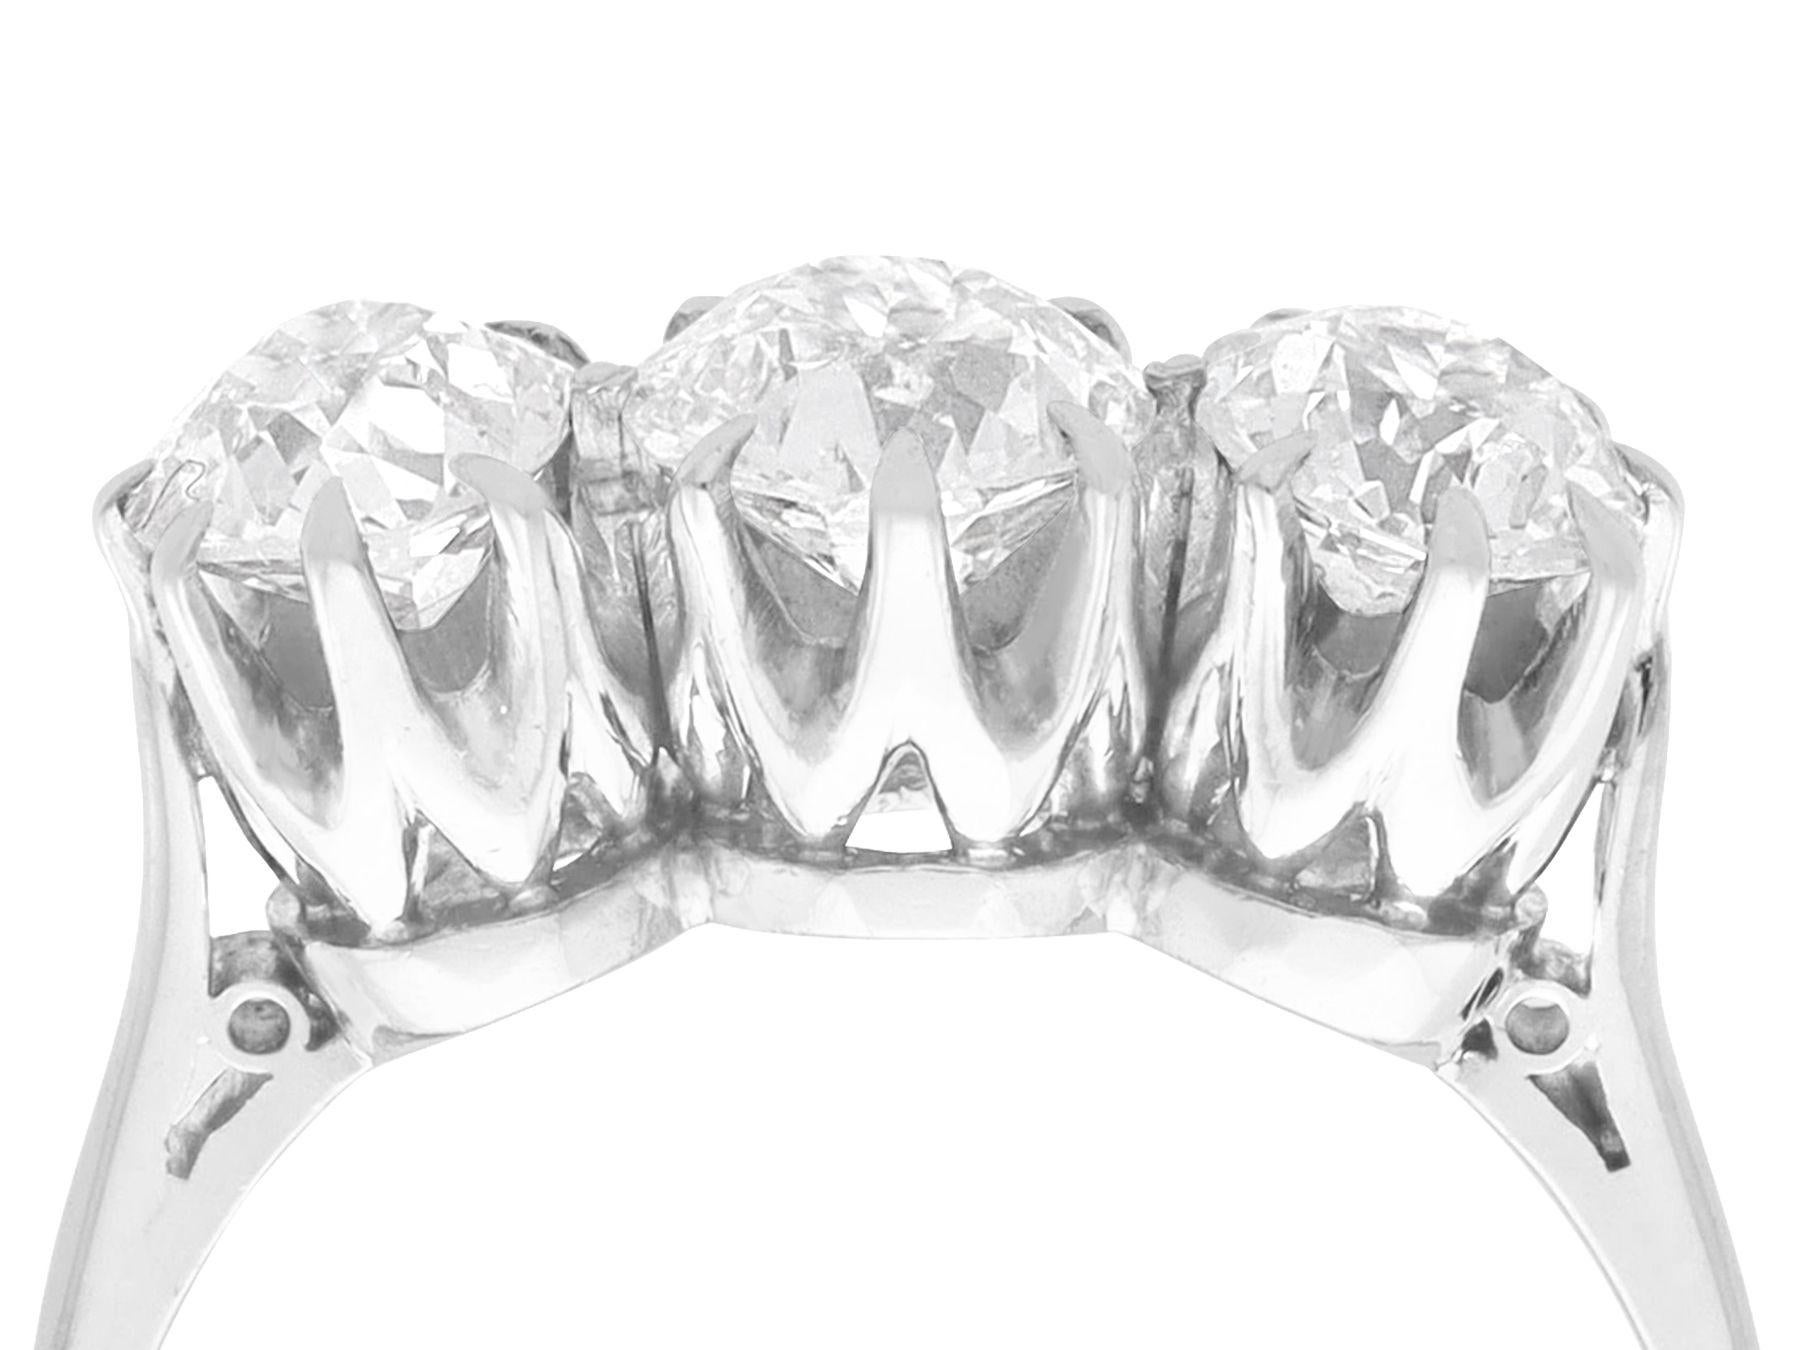 Ein atemberaubender, feiner und beeindruckender Trilogie-Ring aus 2,06 Karat Diamanten und Platin; Teil unserer vielfältigen Verlobungsring-Kollektionen

Dieser atemberaubende, feine und beeindruckende antike Diamant-Verlobungsring wurde in Platin